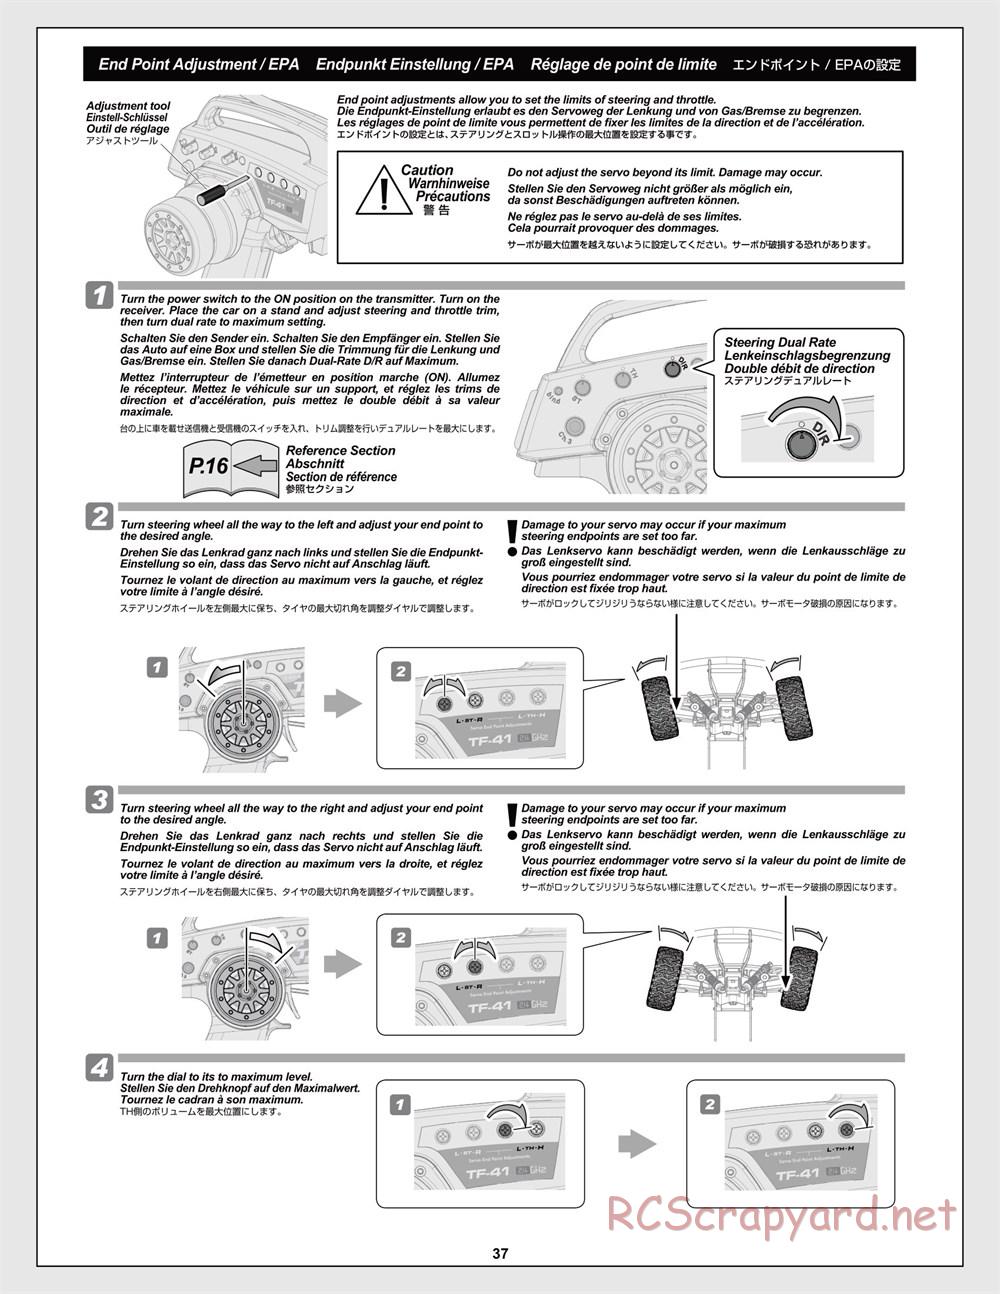 HPI - Jumpshot MT Flux - Manual - Page 37